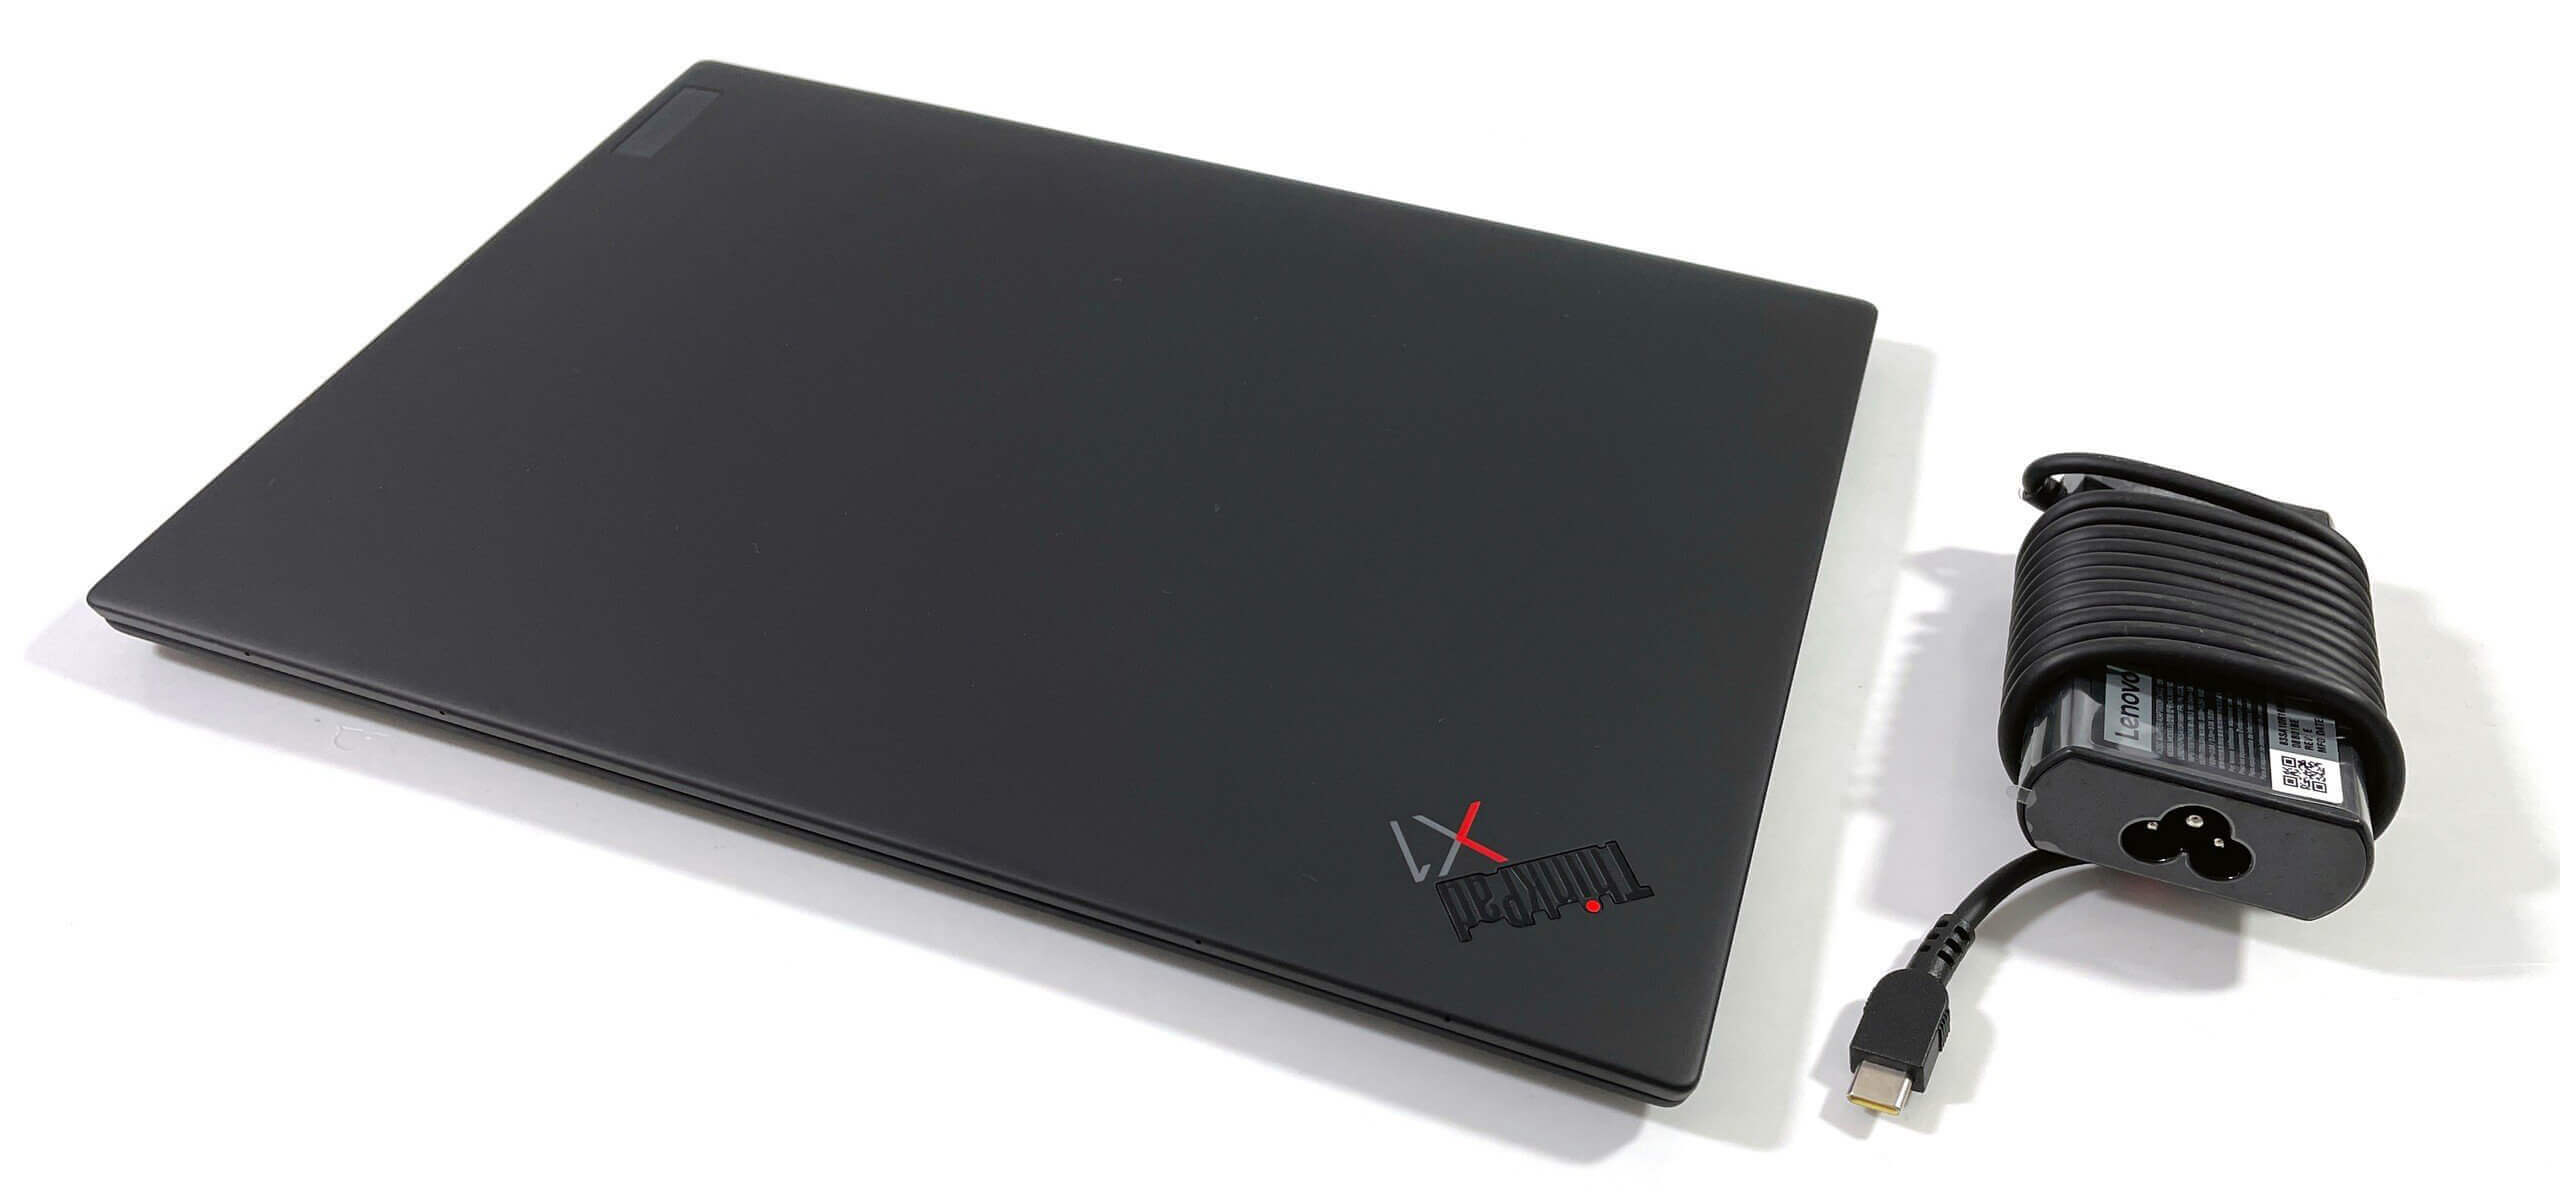 Cổng kết nối trên ThinkPad X1 Nano Gen 1 được tinh giản để phù hợp với thiết kế